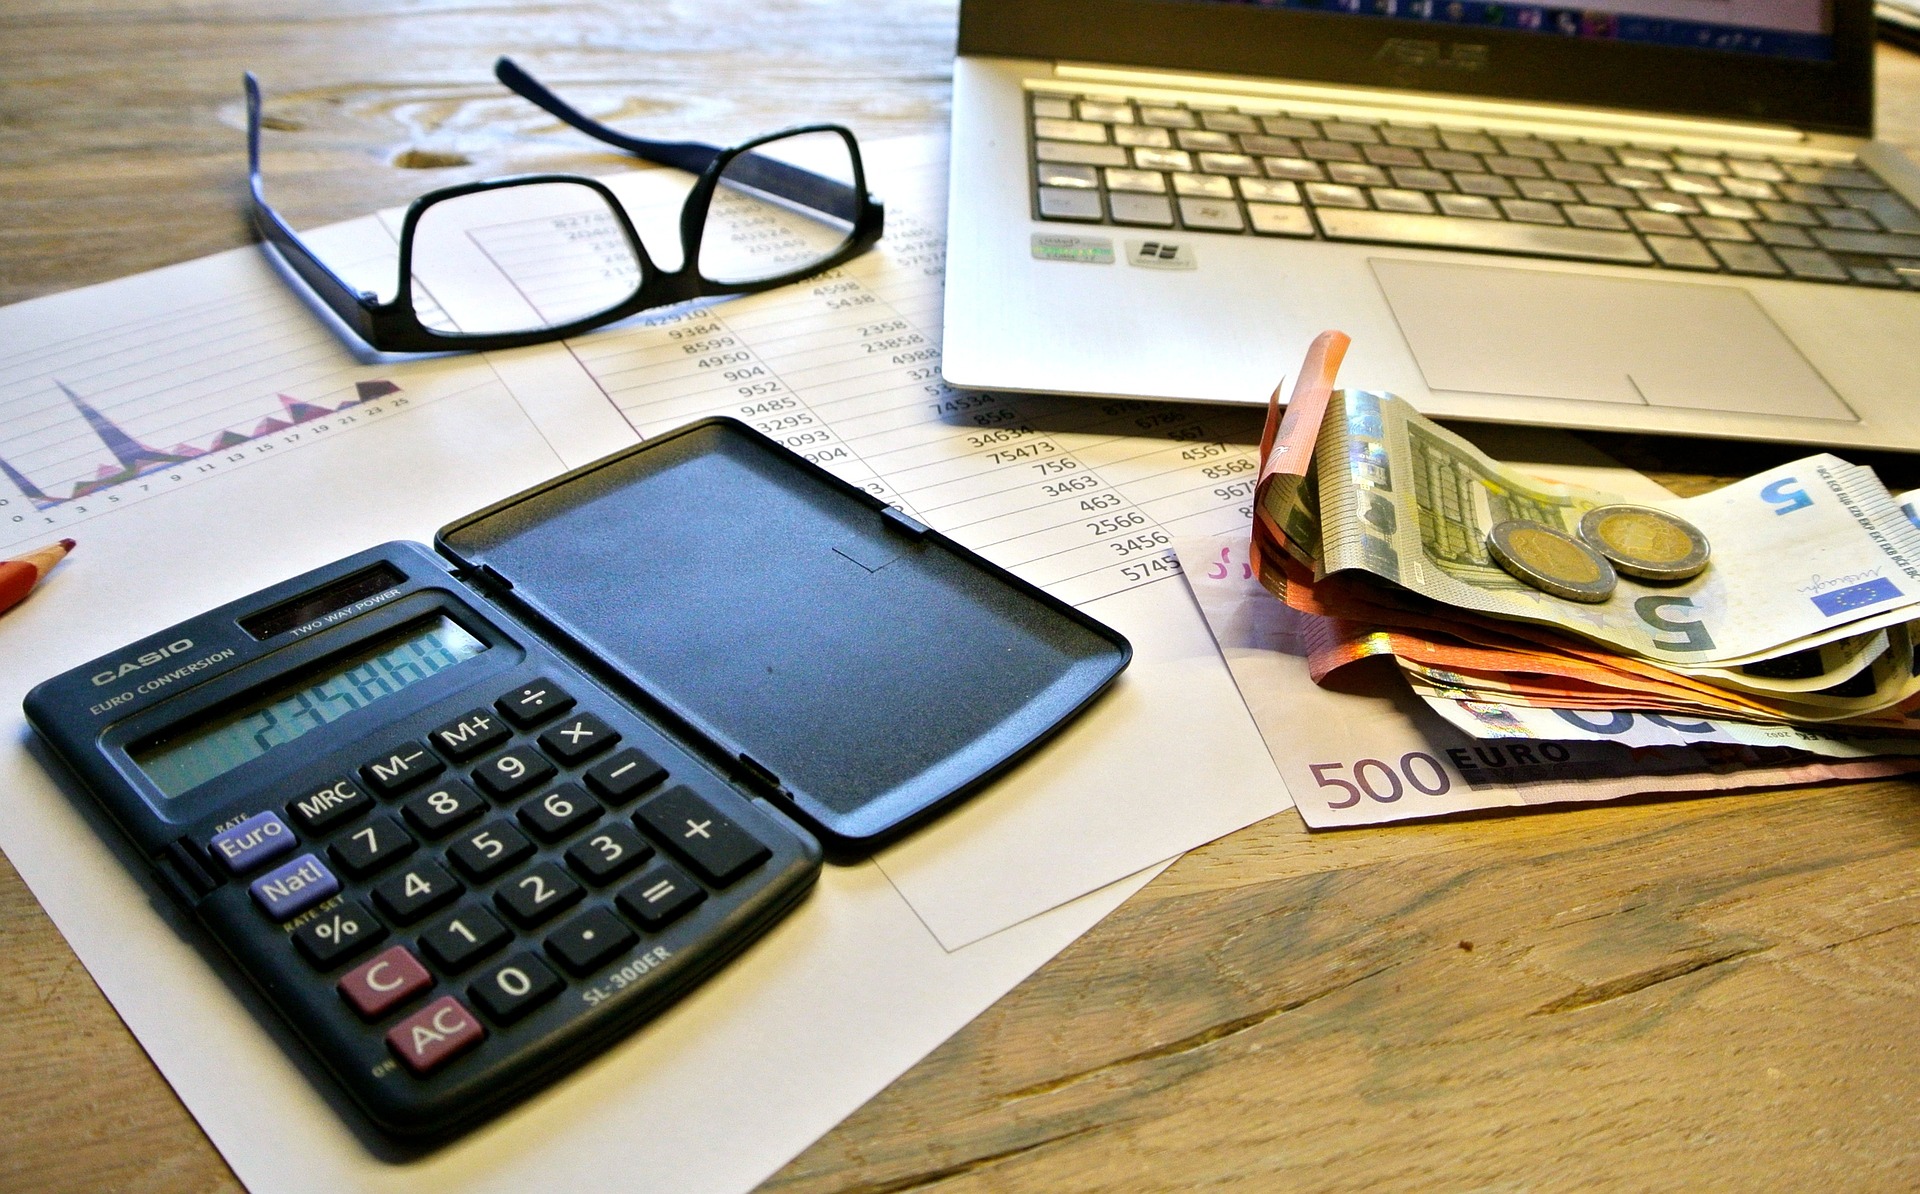 Laptop, dinero, calculadora y lentes sobre una mesa.